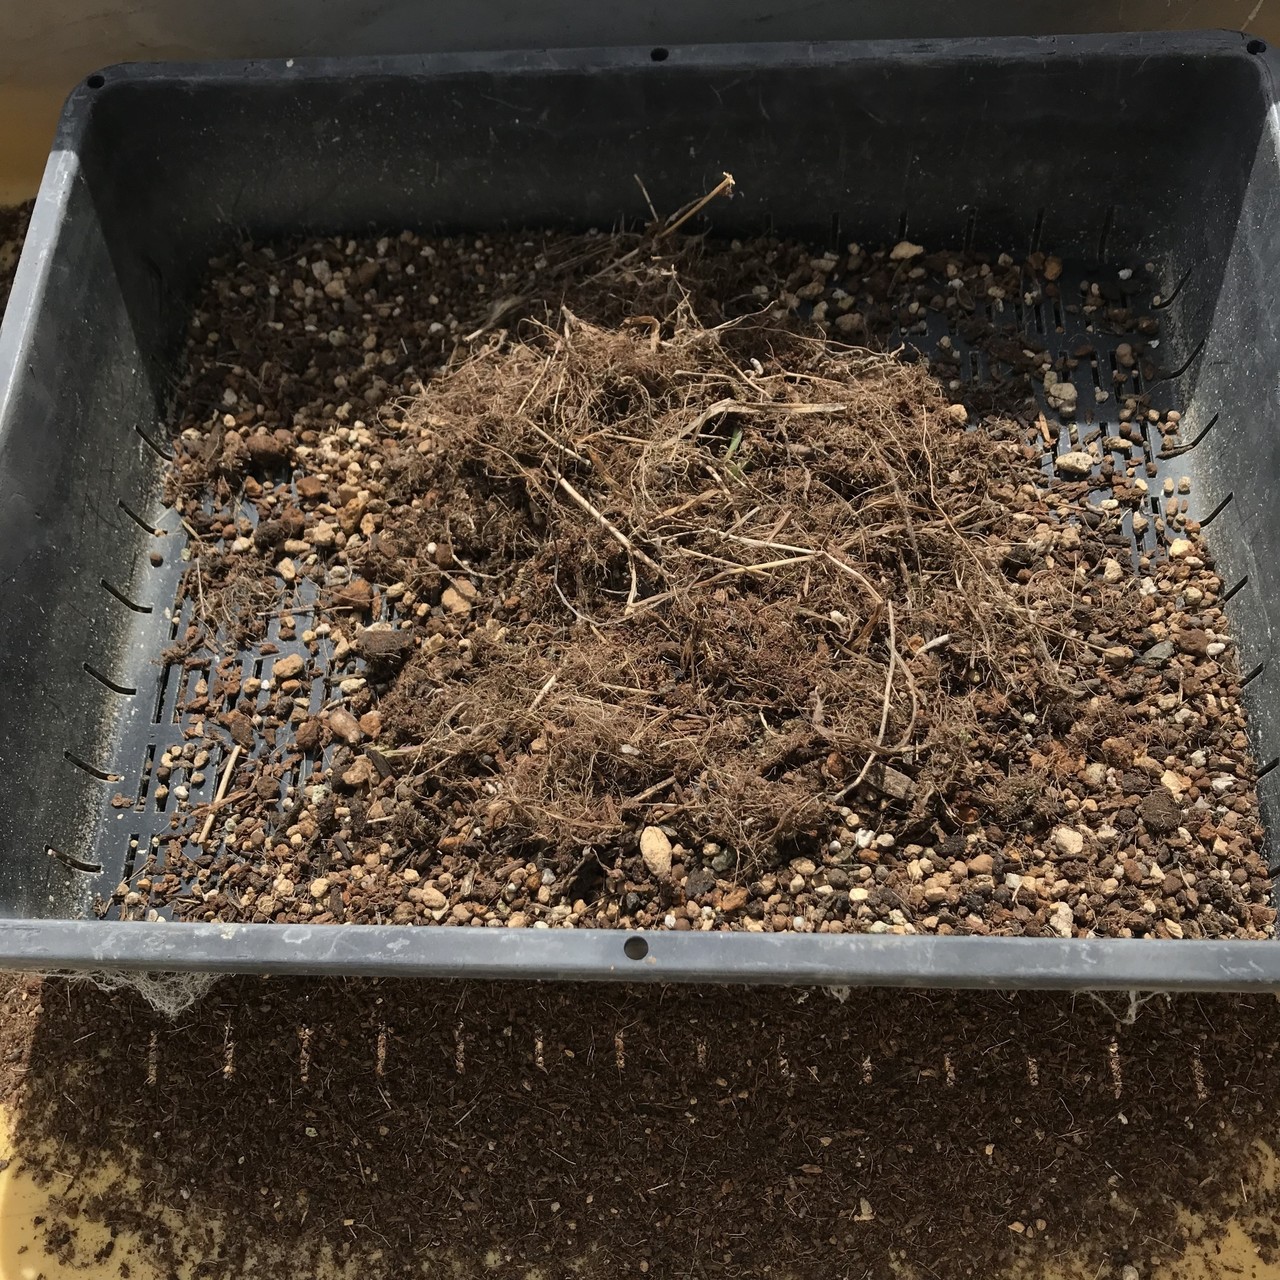 ガーデニングで使った培養土のリサイクル方法 黒大根くん2 0 Note